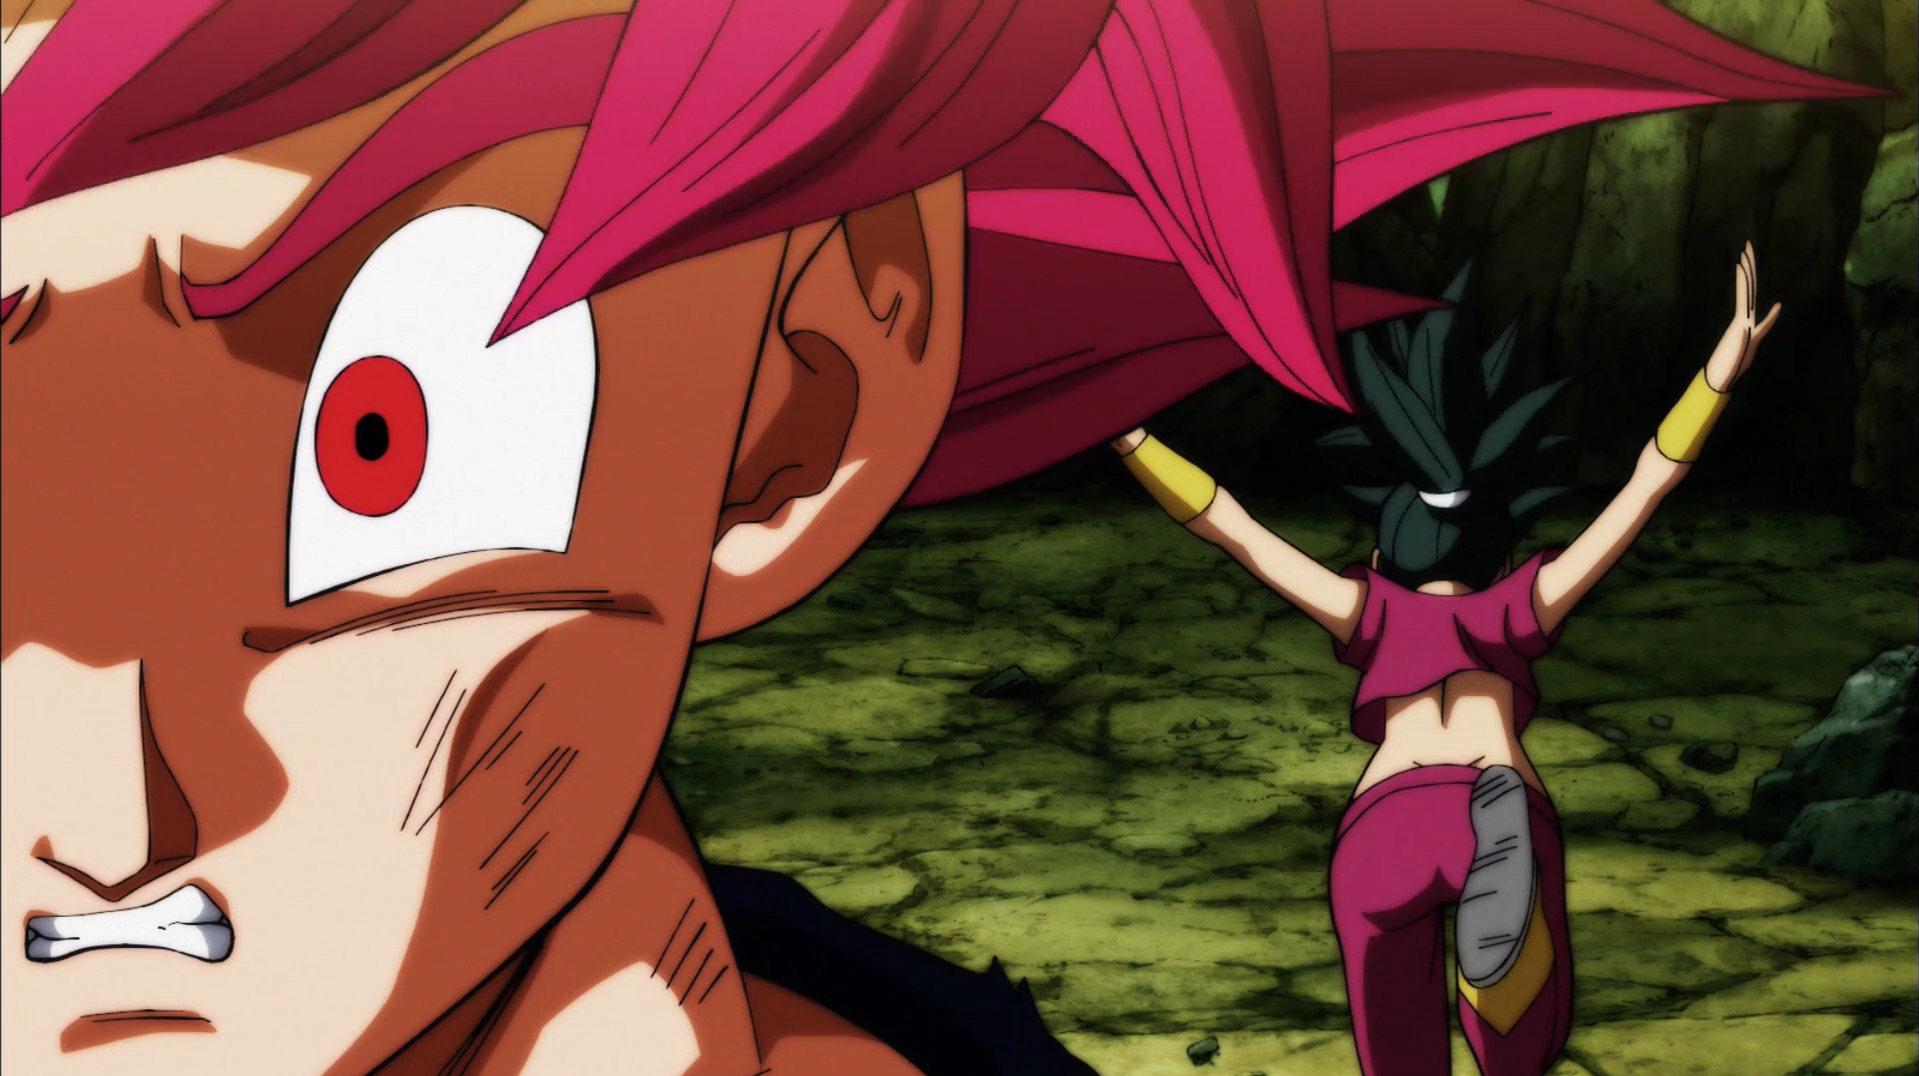 D. Ball Limit-F - Ta aí uma versão feminina do Goku sem estar sexualizada e  também mais coerente com que Akira talvez proporia do Saiyajin.